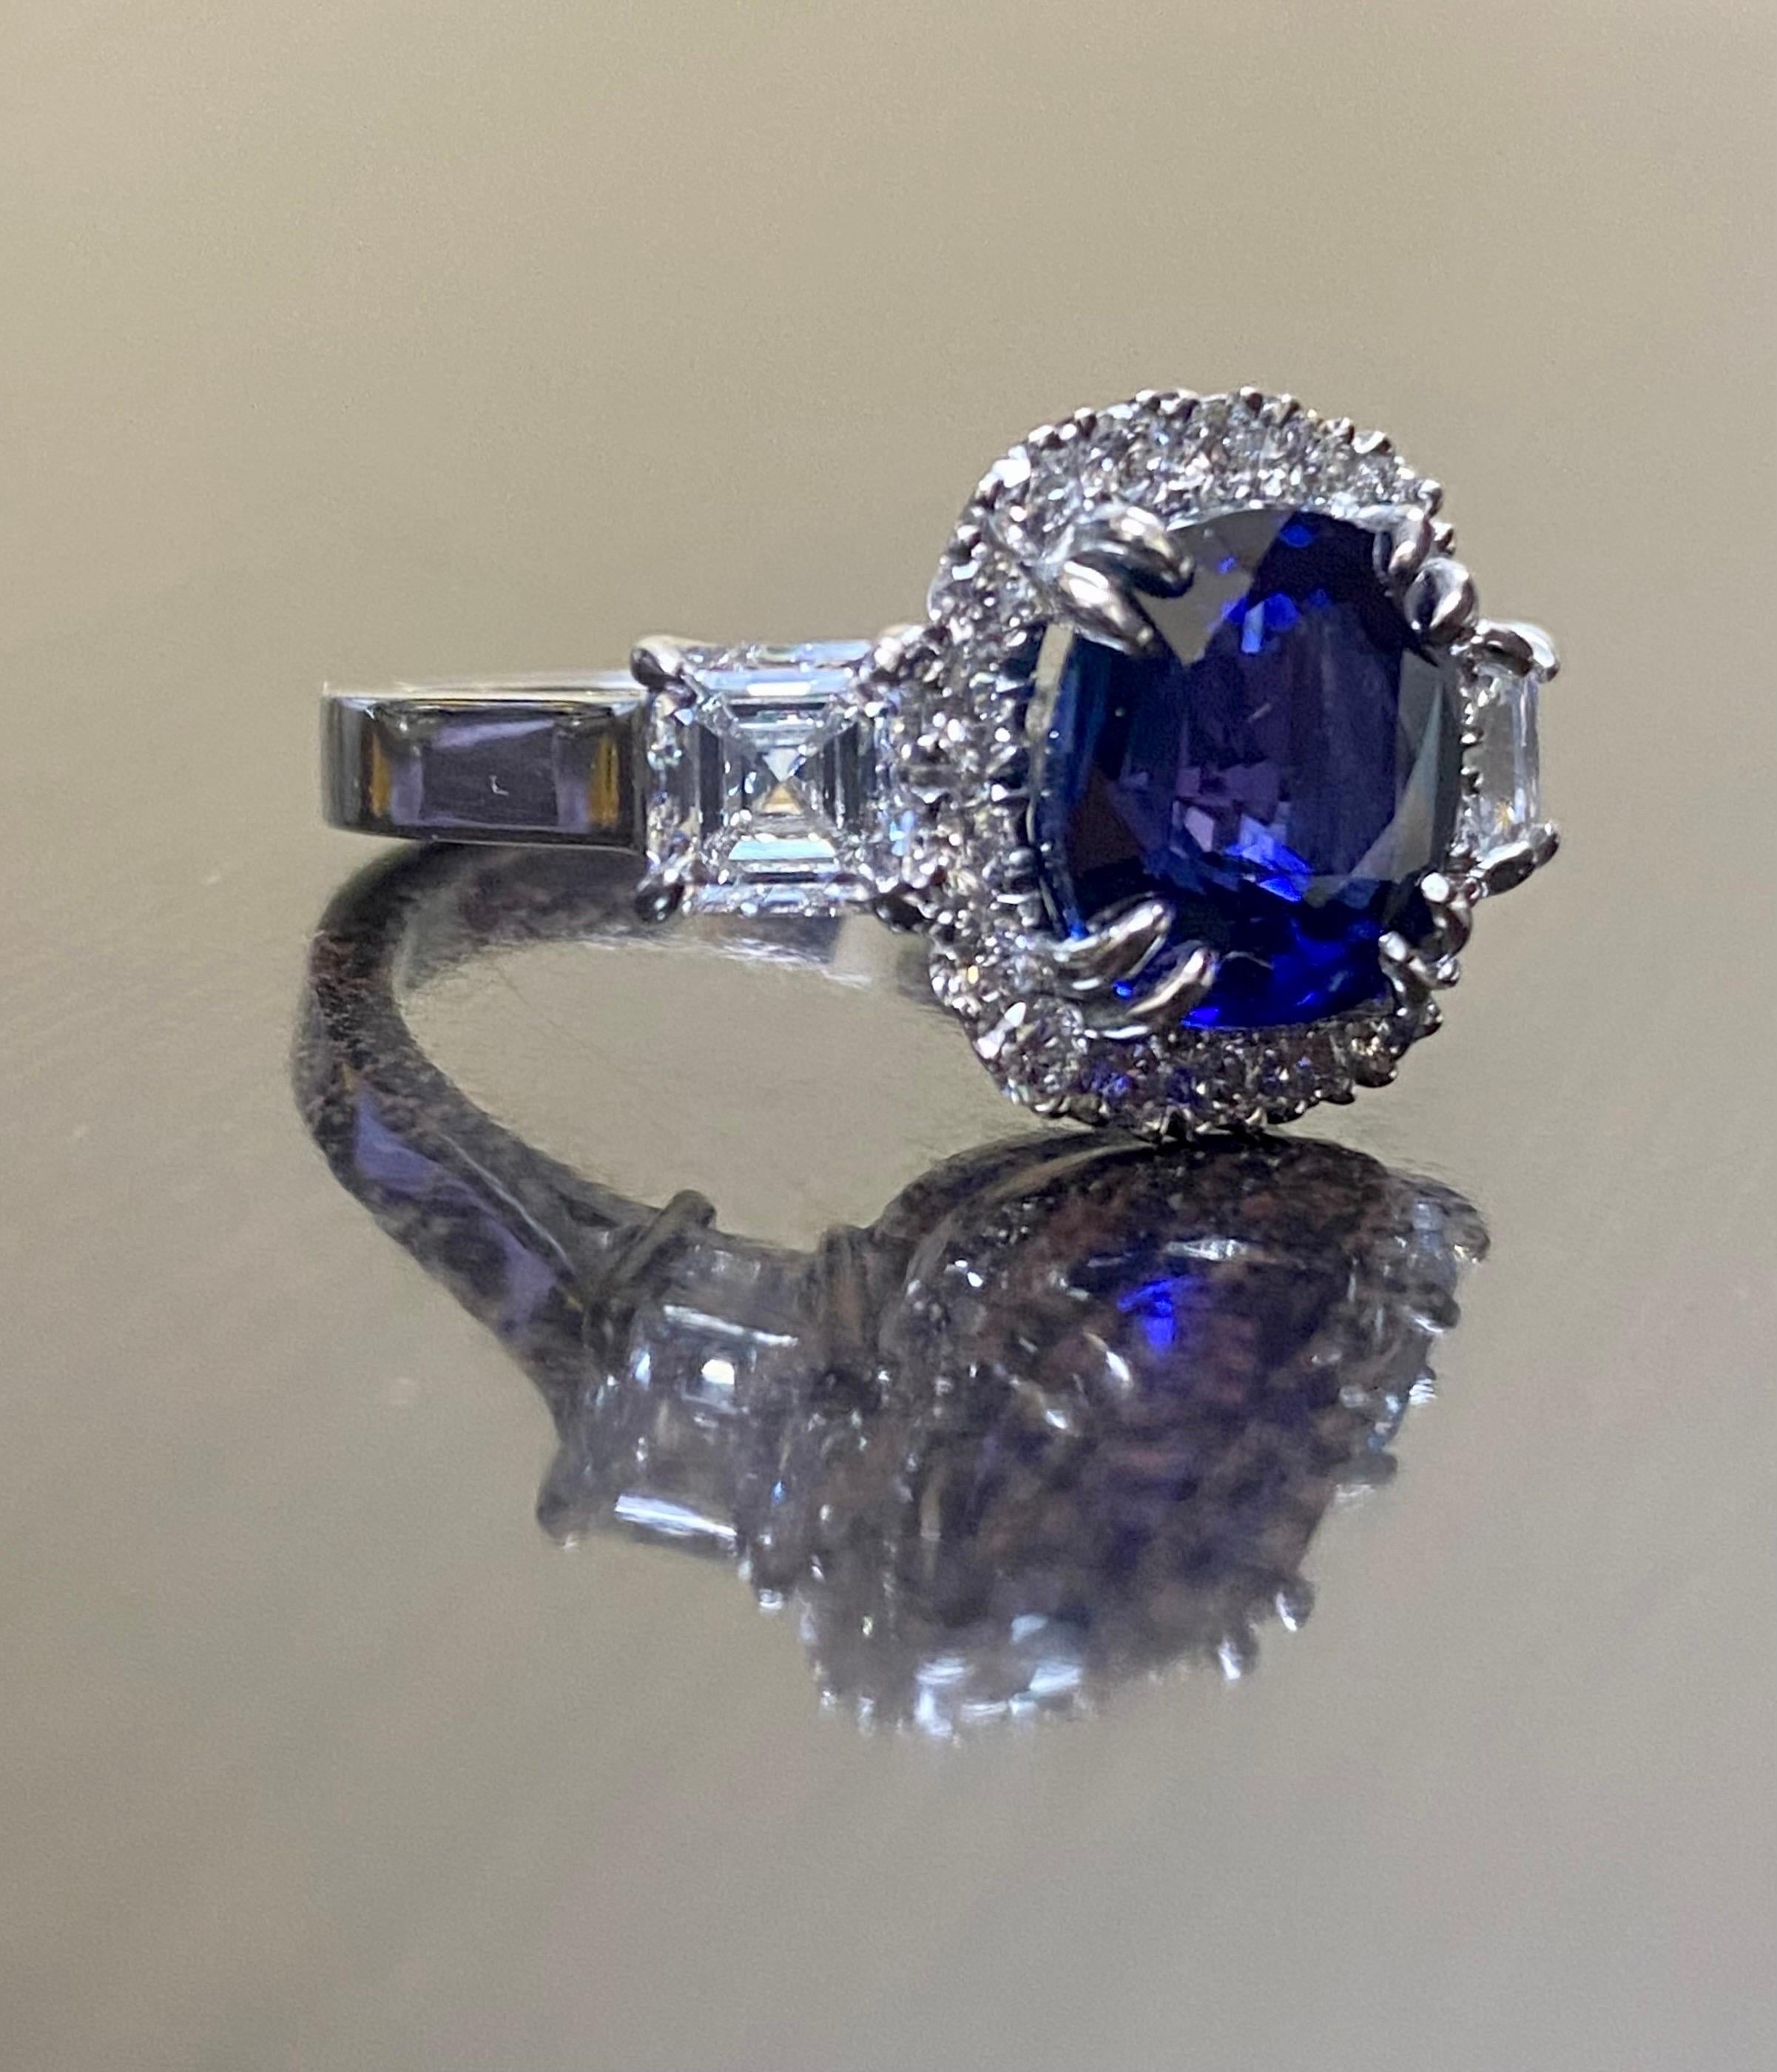 DeKara Designs Collection Masterpiece

Wunderschöner Modern/Art Deco Ceylon Blue Sapphire und Diamant Ring

Metall - 90% Platin, 10% Iridium.

Steine- GIA-zertifizierter Ceylon-Königsblauer Saphir im Kissenschliff mit 5,03 Karat. GIA-zertifizierter